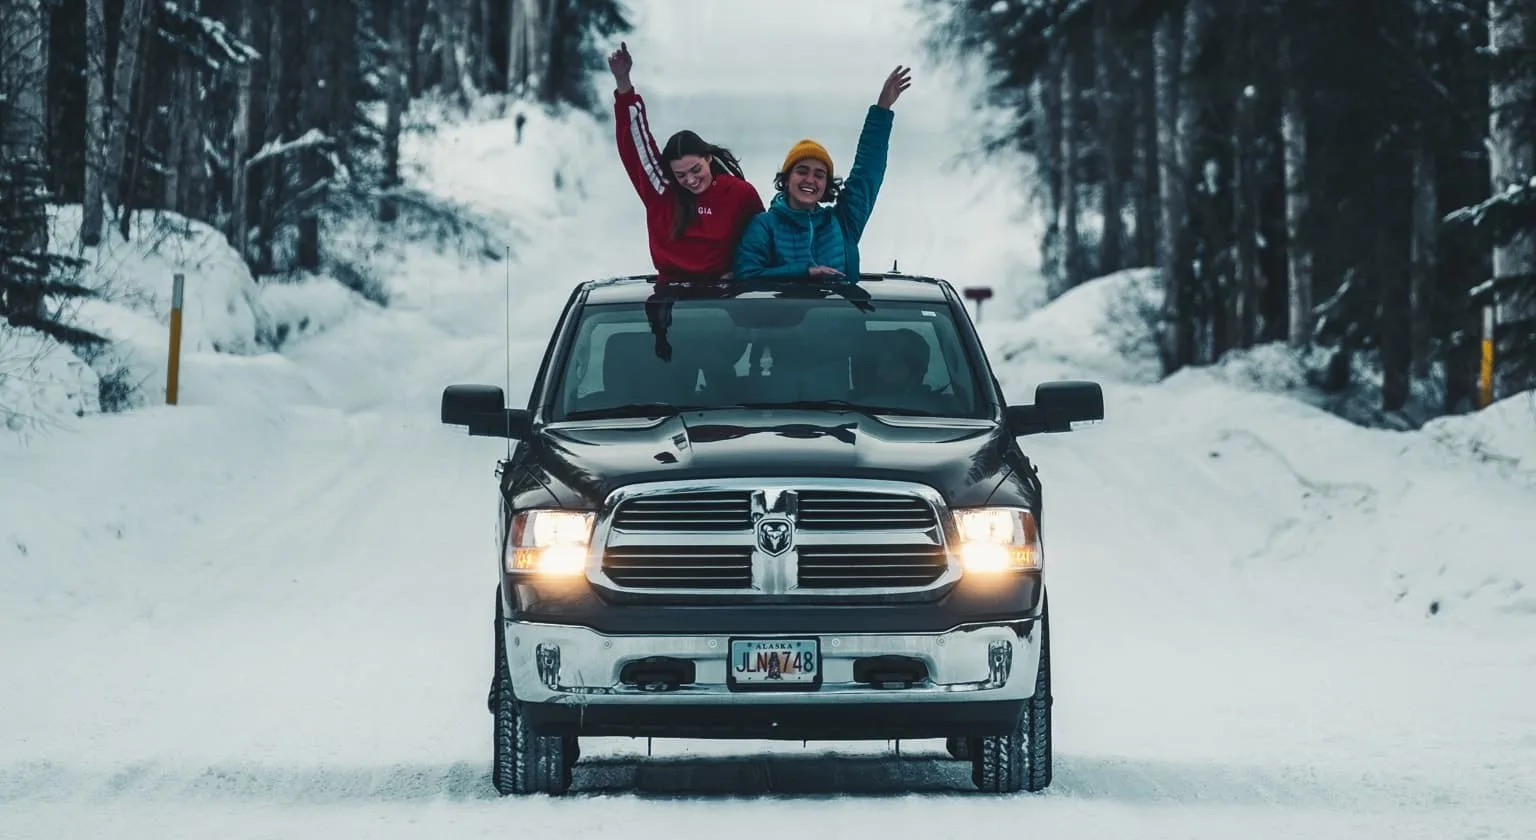 two friends enjoying winter on truck